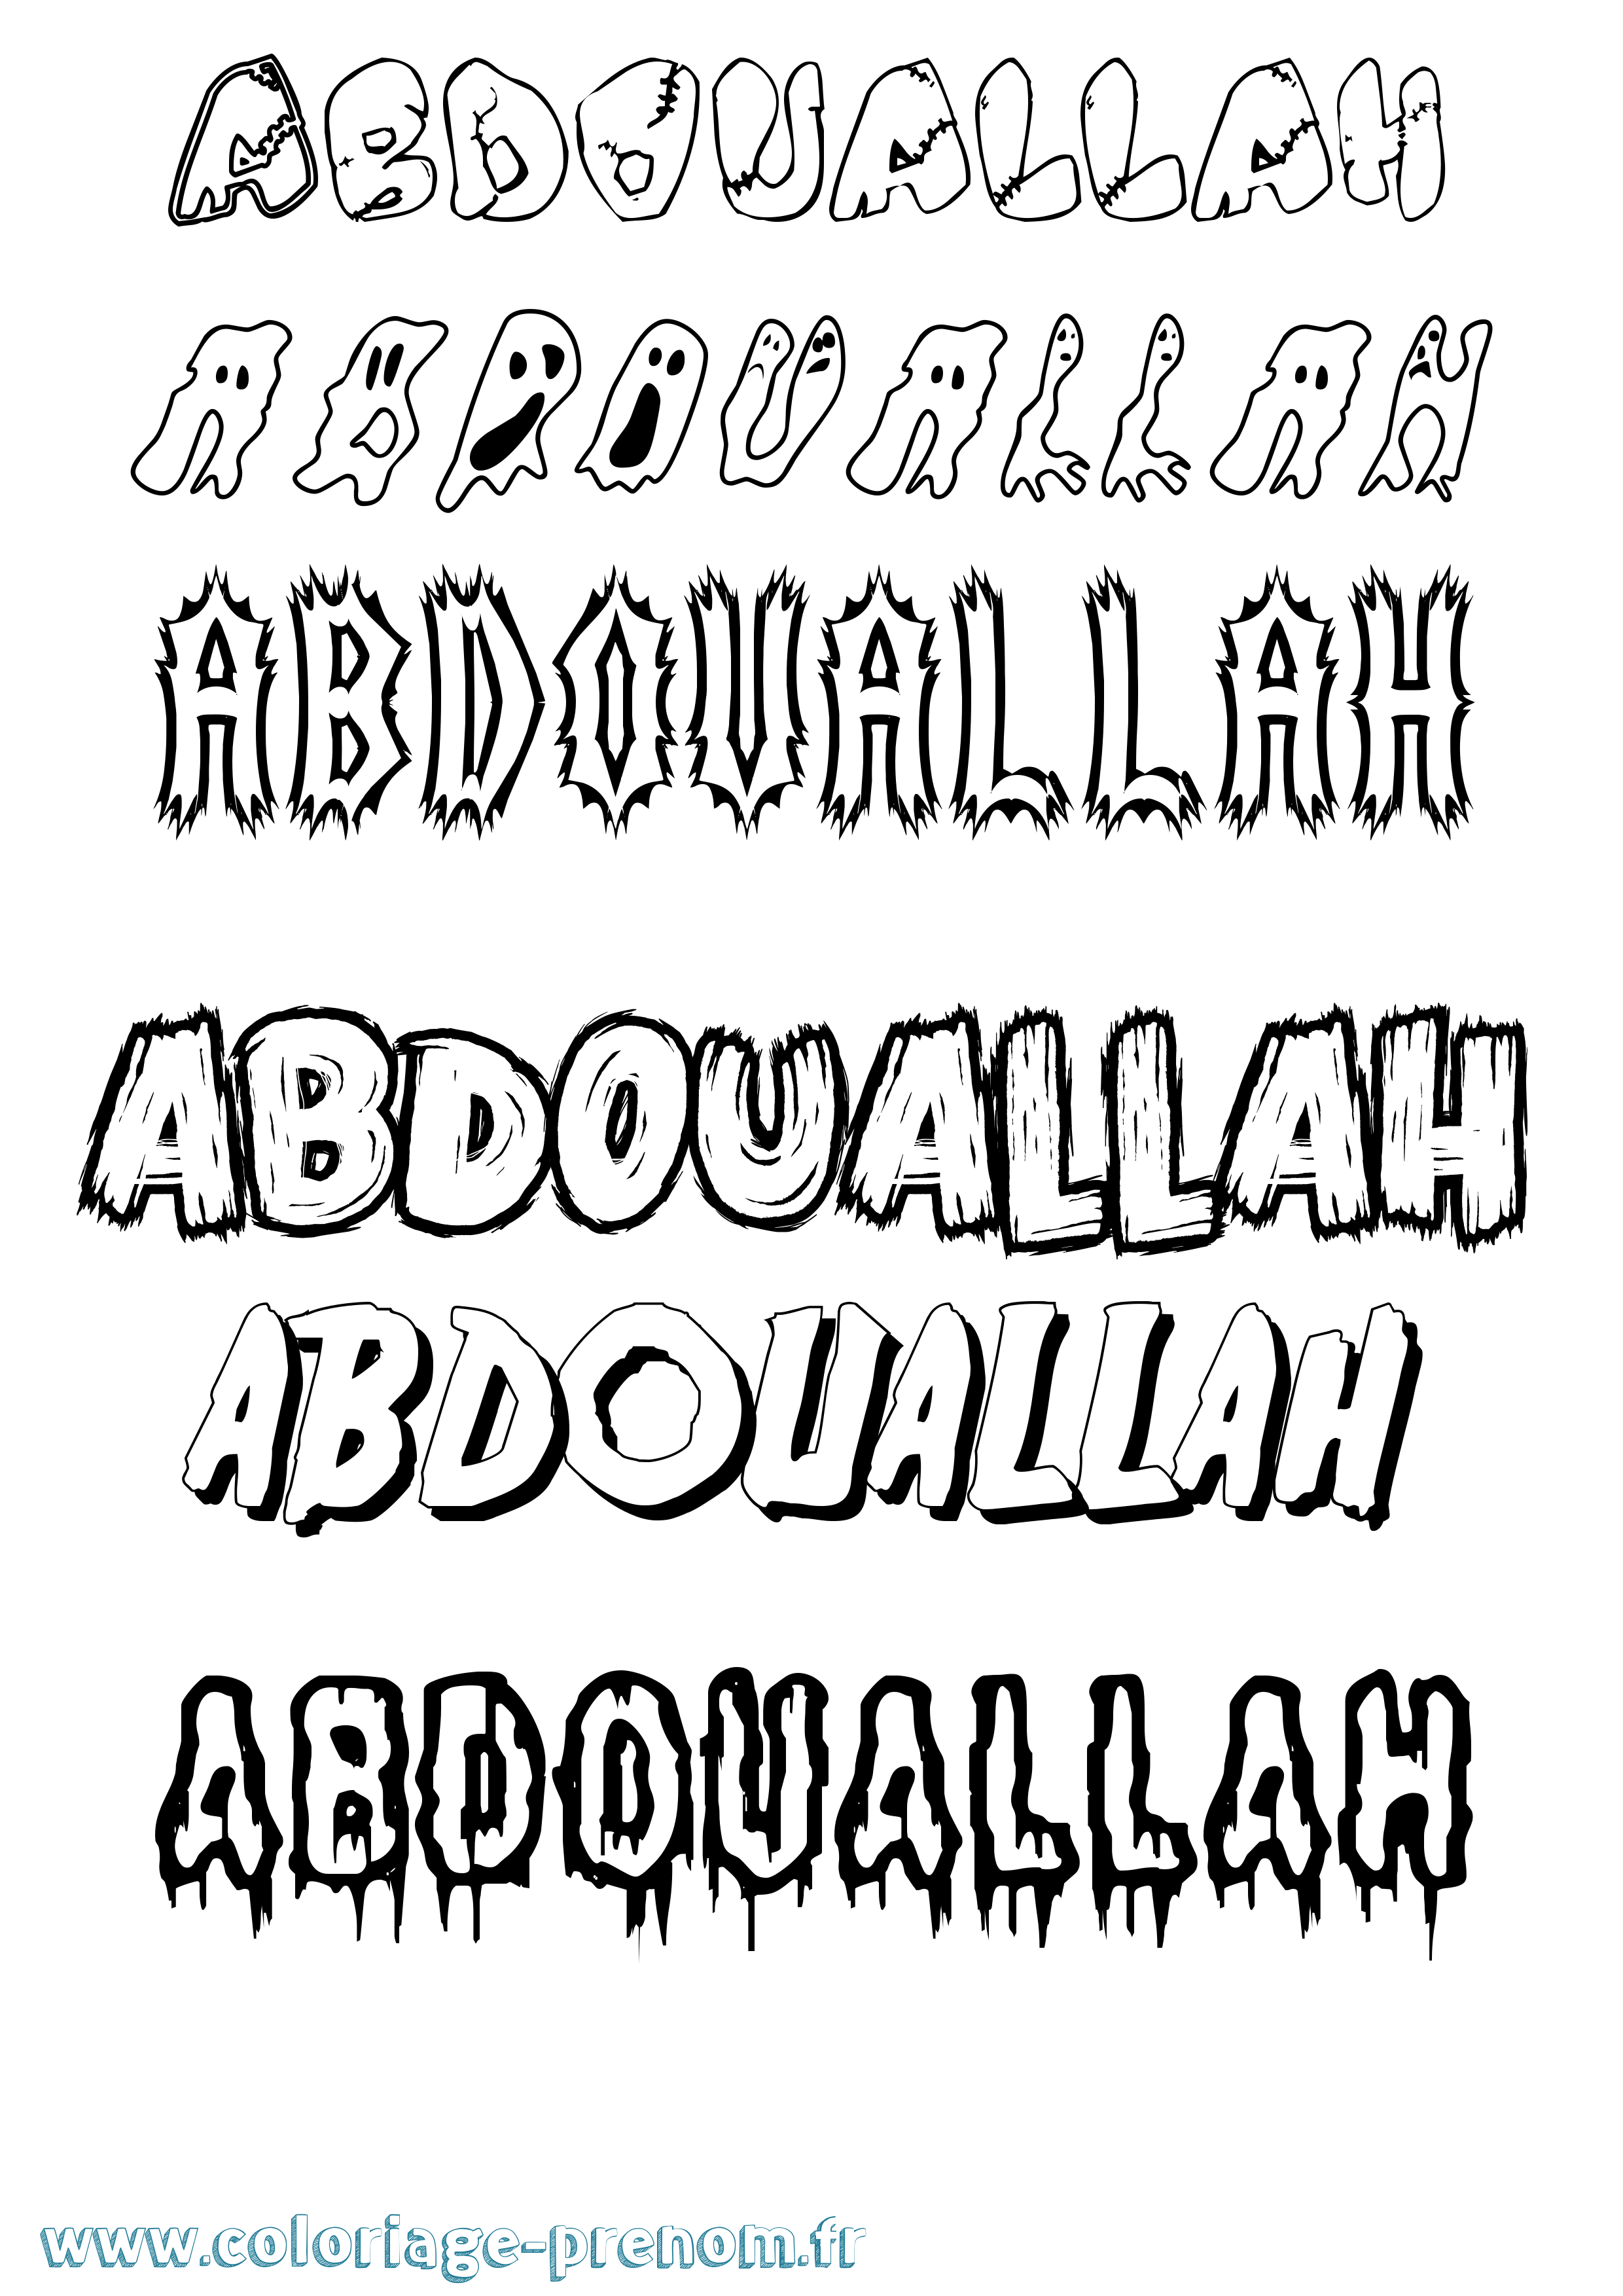 Coloriage prénom Abdouallah Frisson